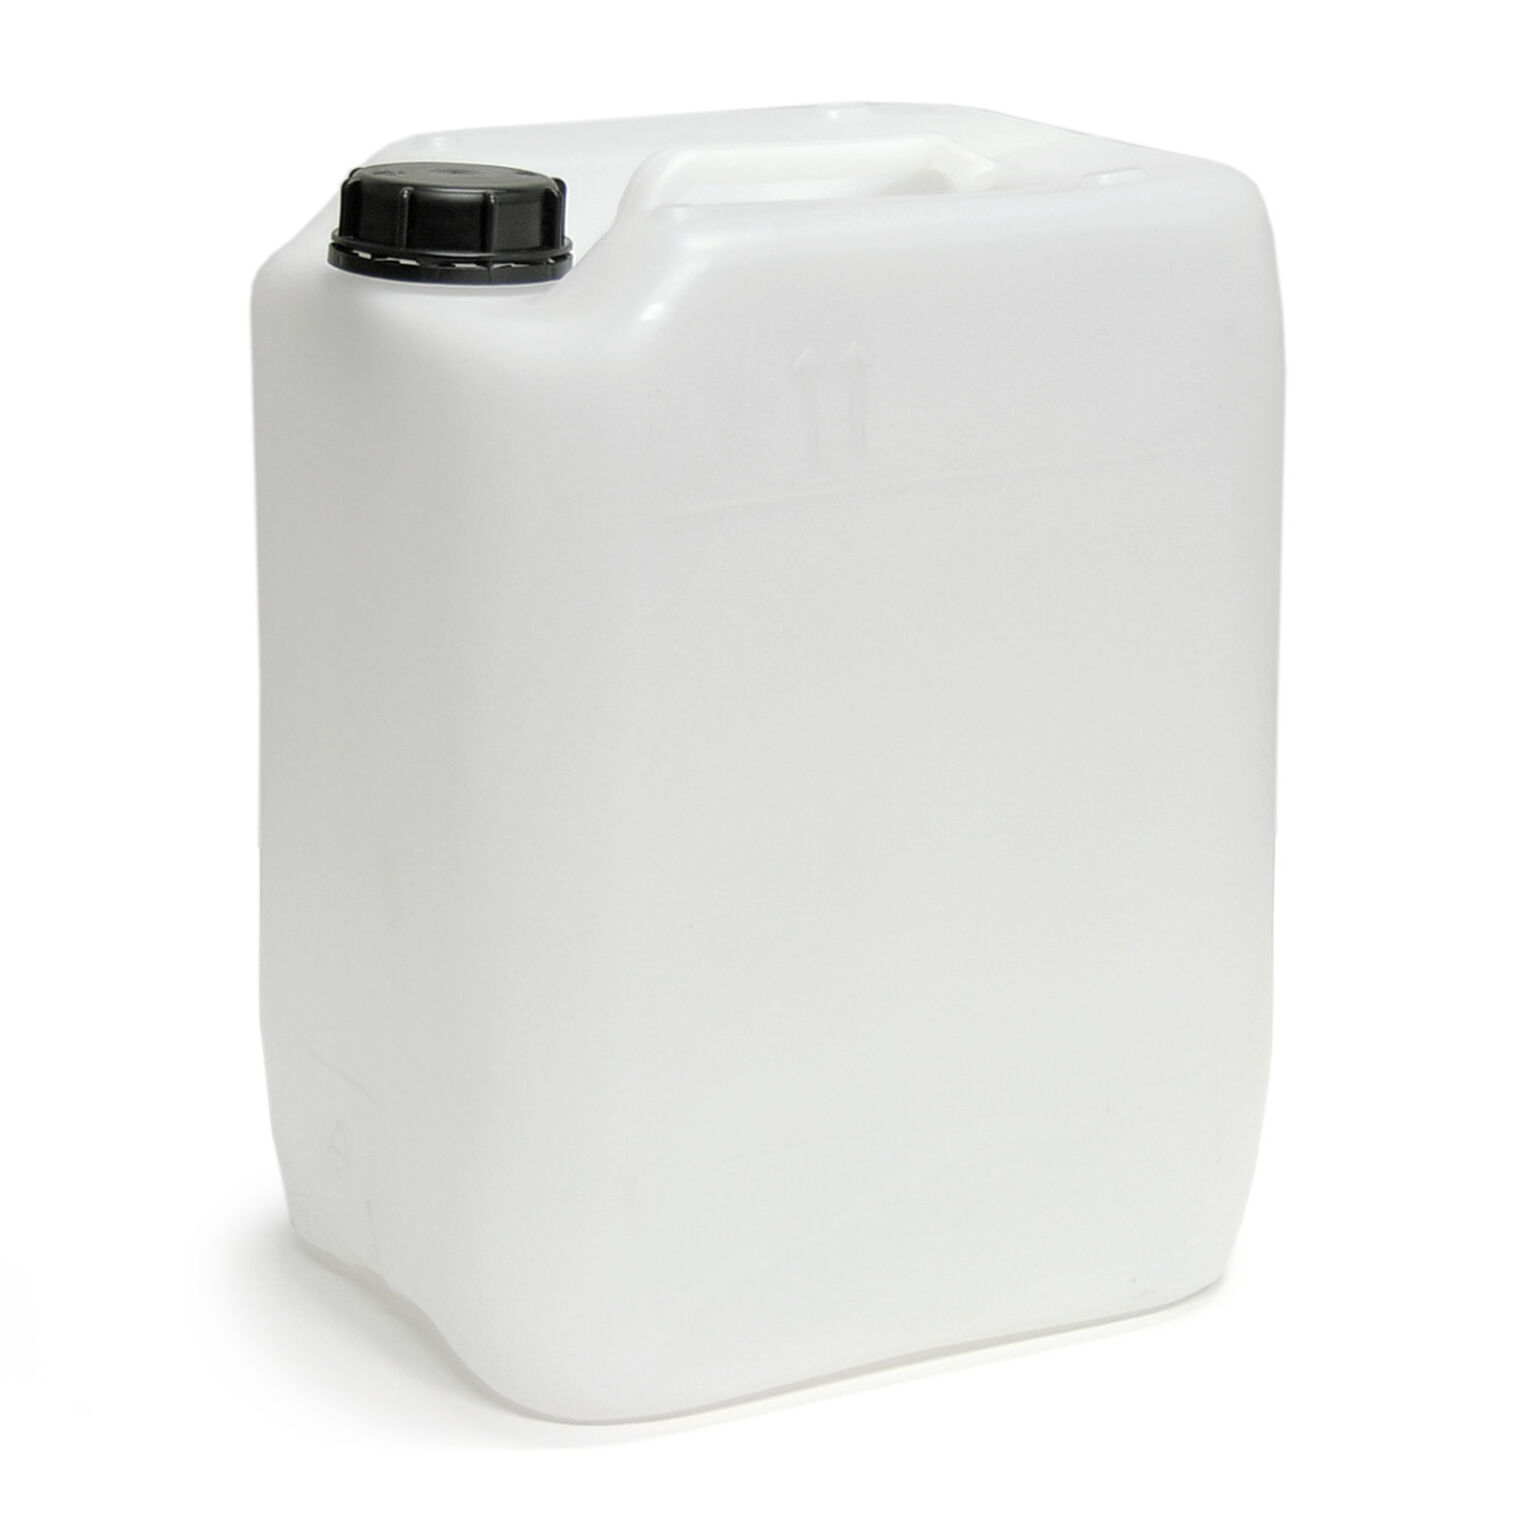 Boîte en plastique un-contrôlé bidon d'essence 20 litre Type: boîte en  plastique UN-contrôlé